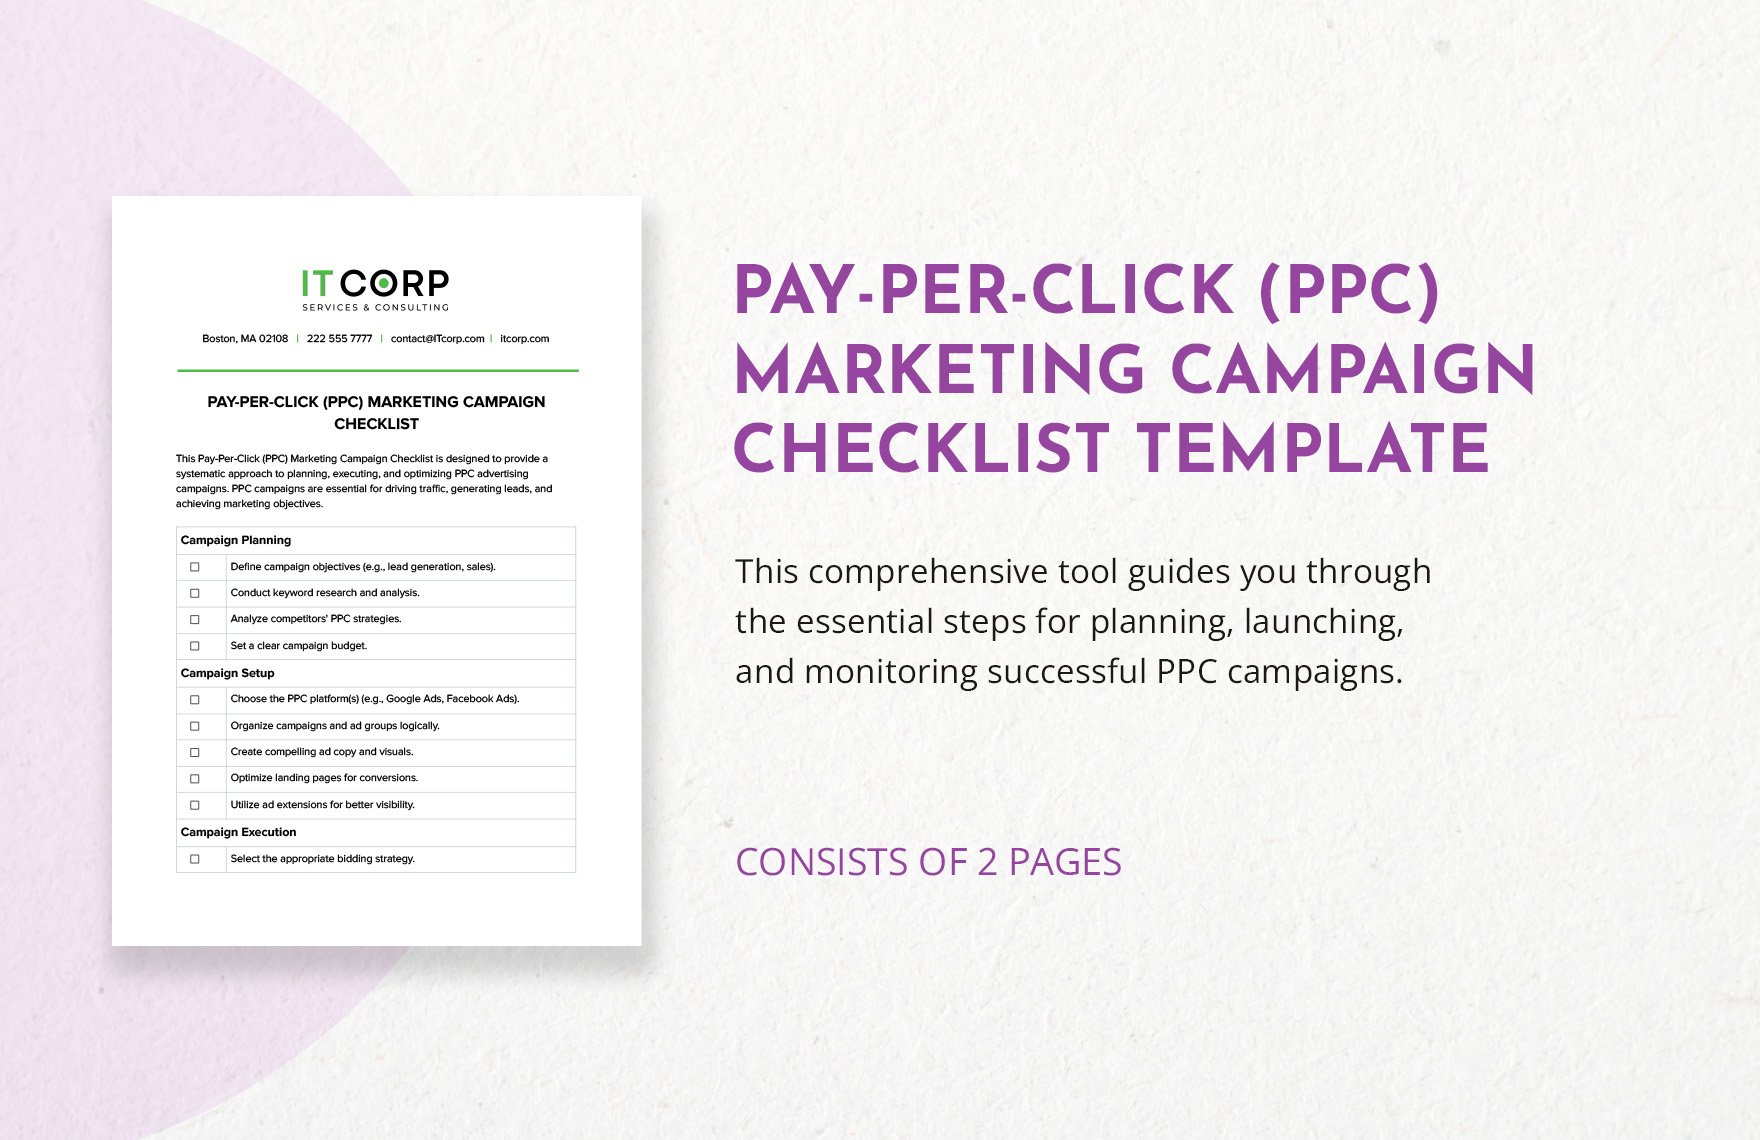 Pay-per-click (PPC) Marketing Campaign Checklist Template